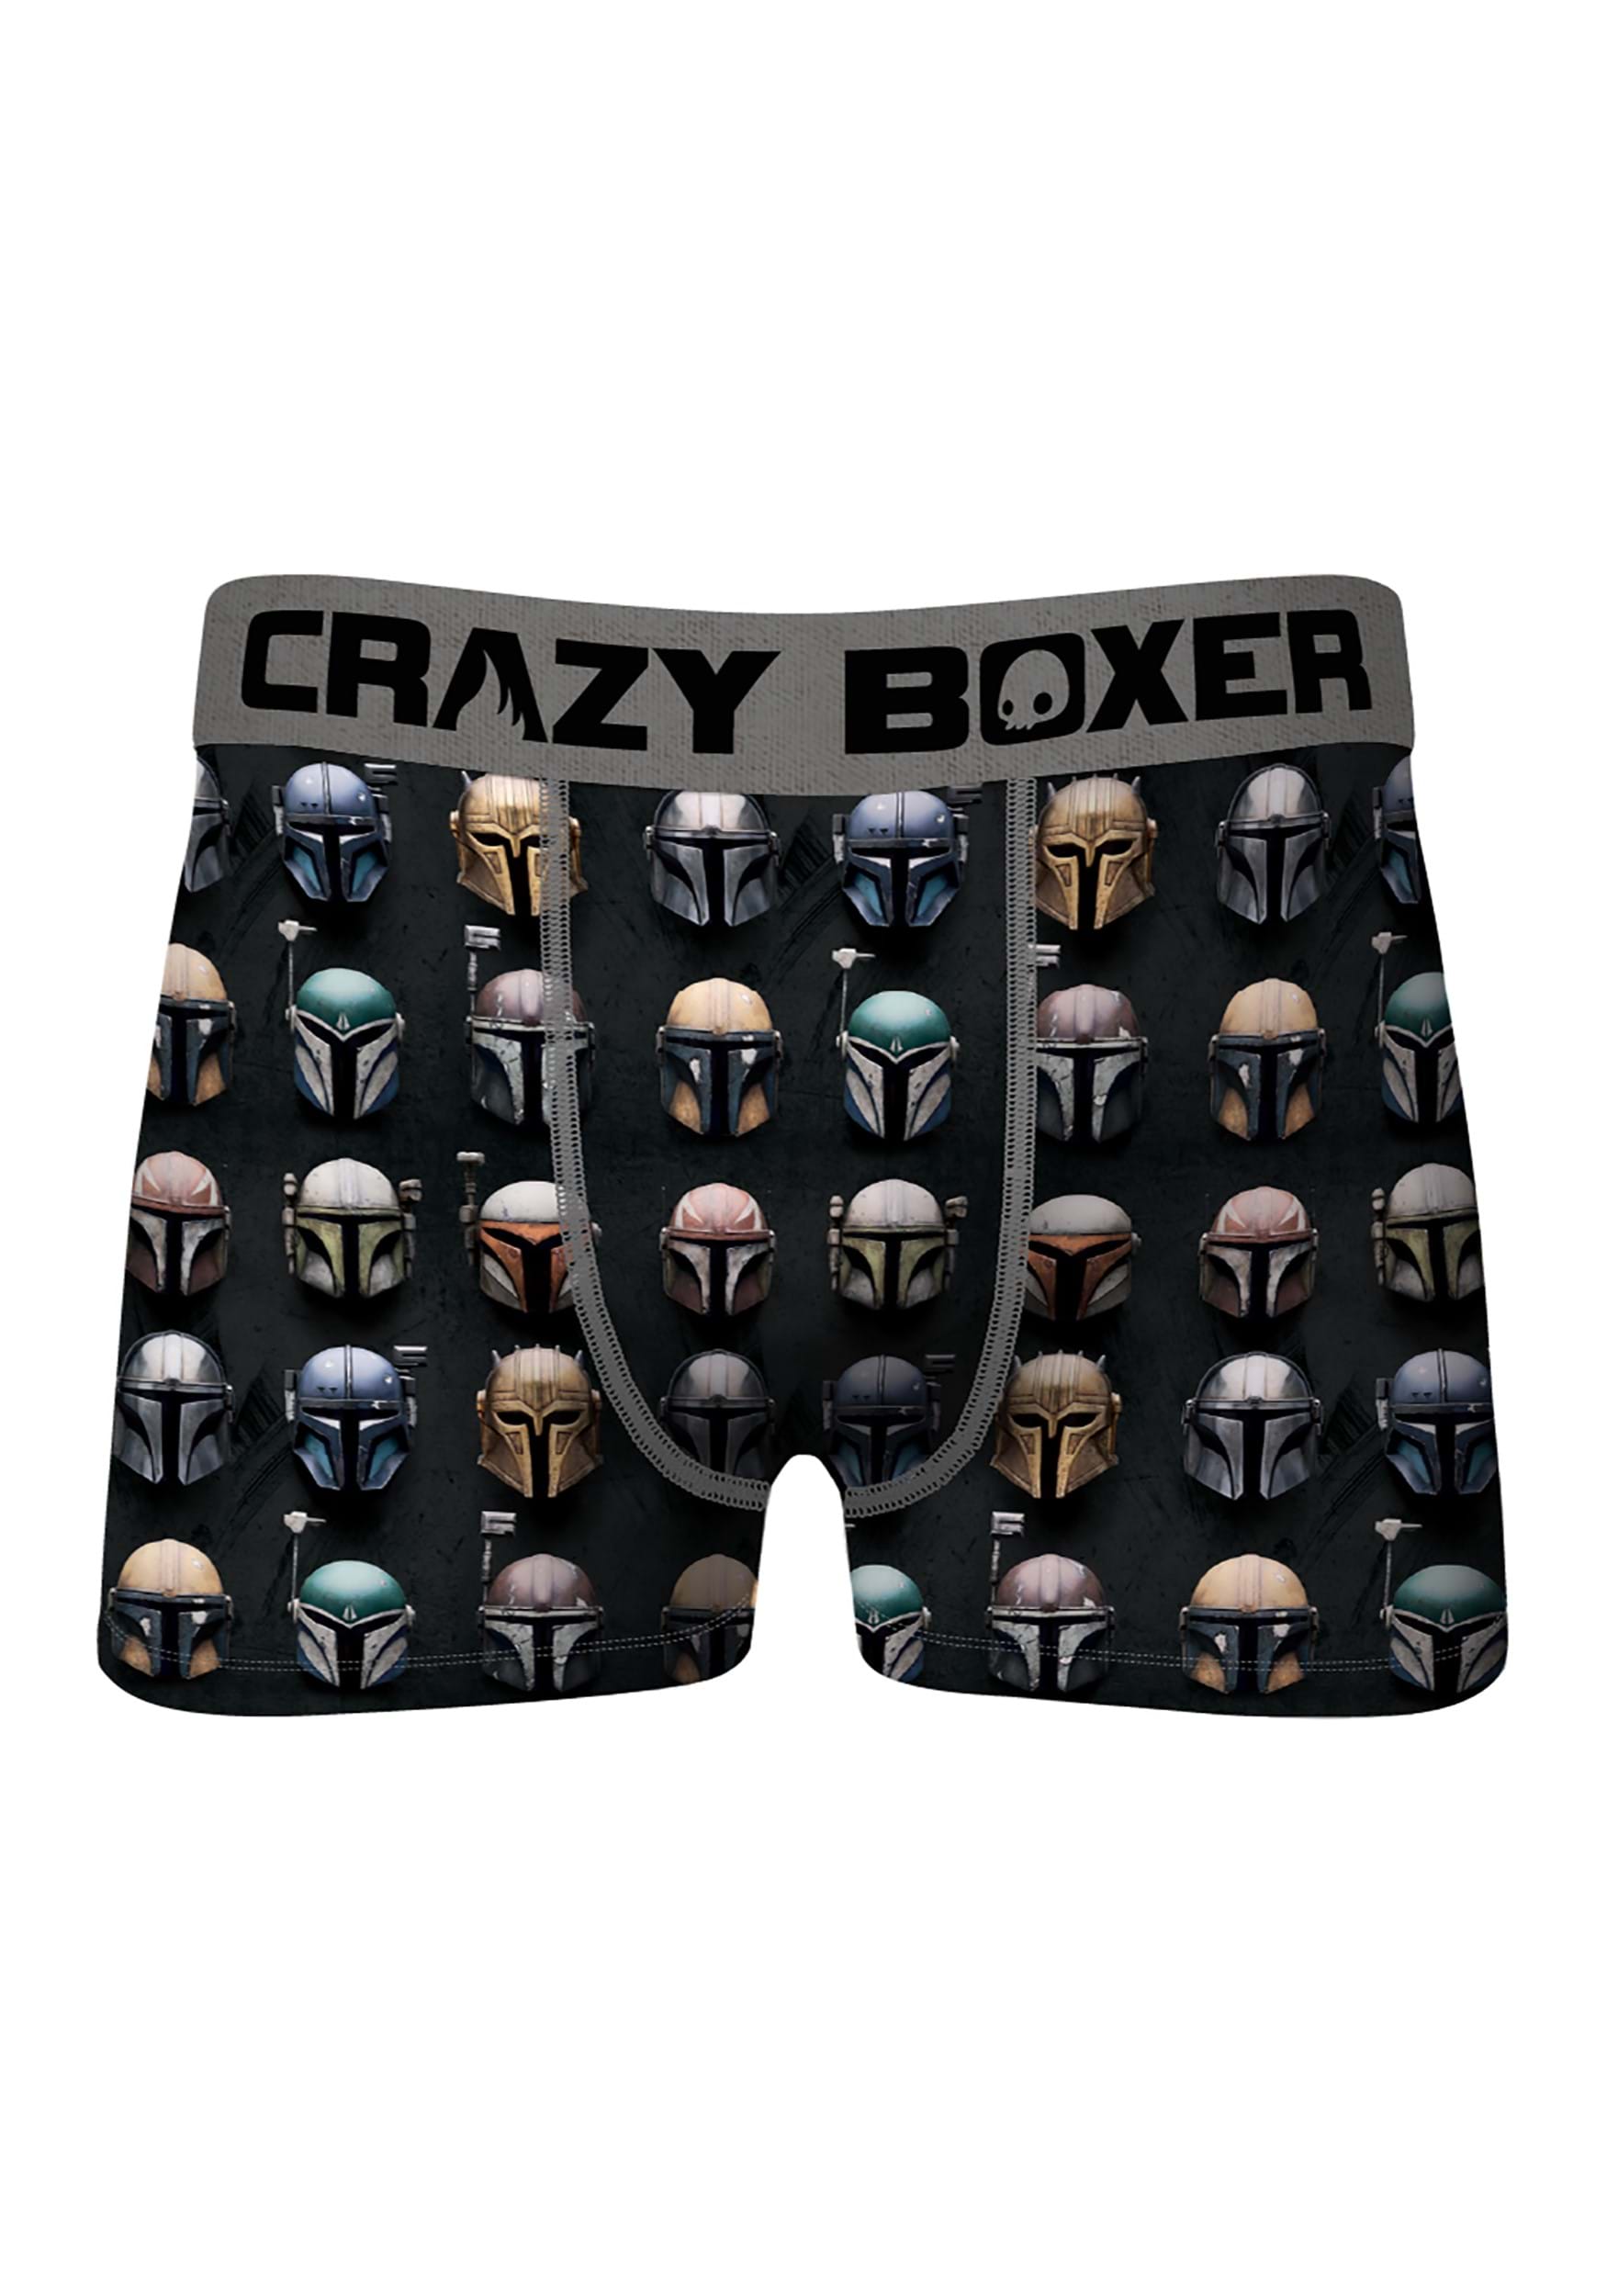 CRAZYBOXER Crazy Boxers Mens Mandalorian Fight Boxer Briefs